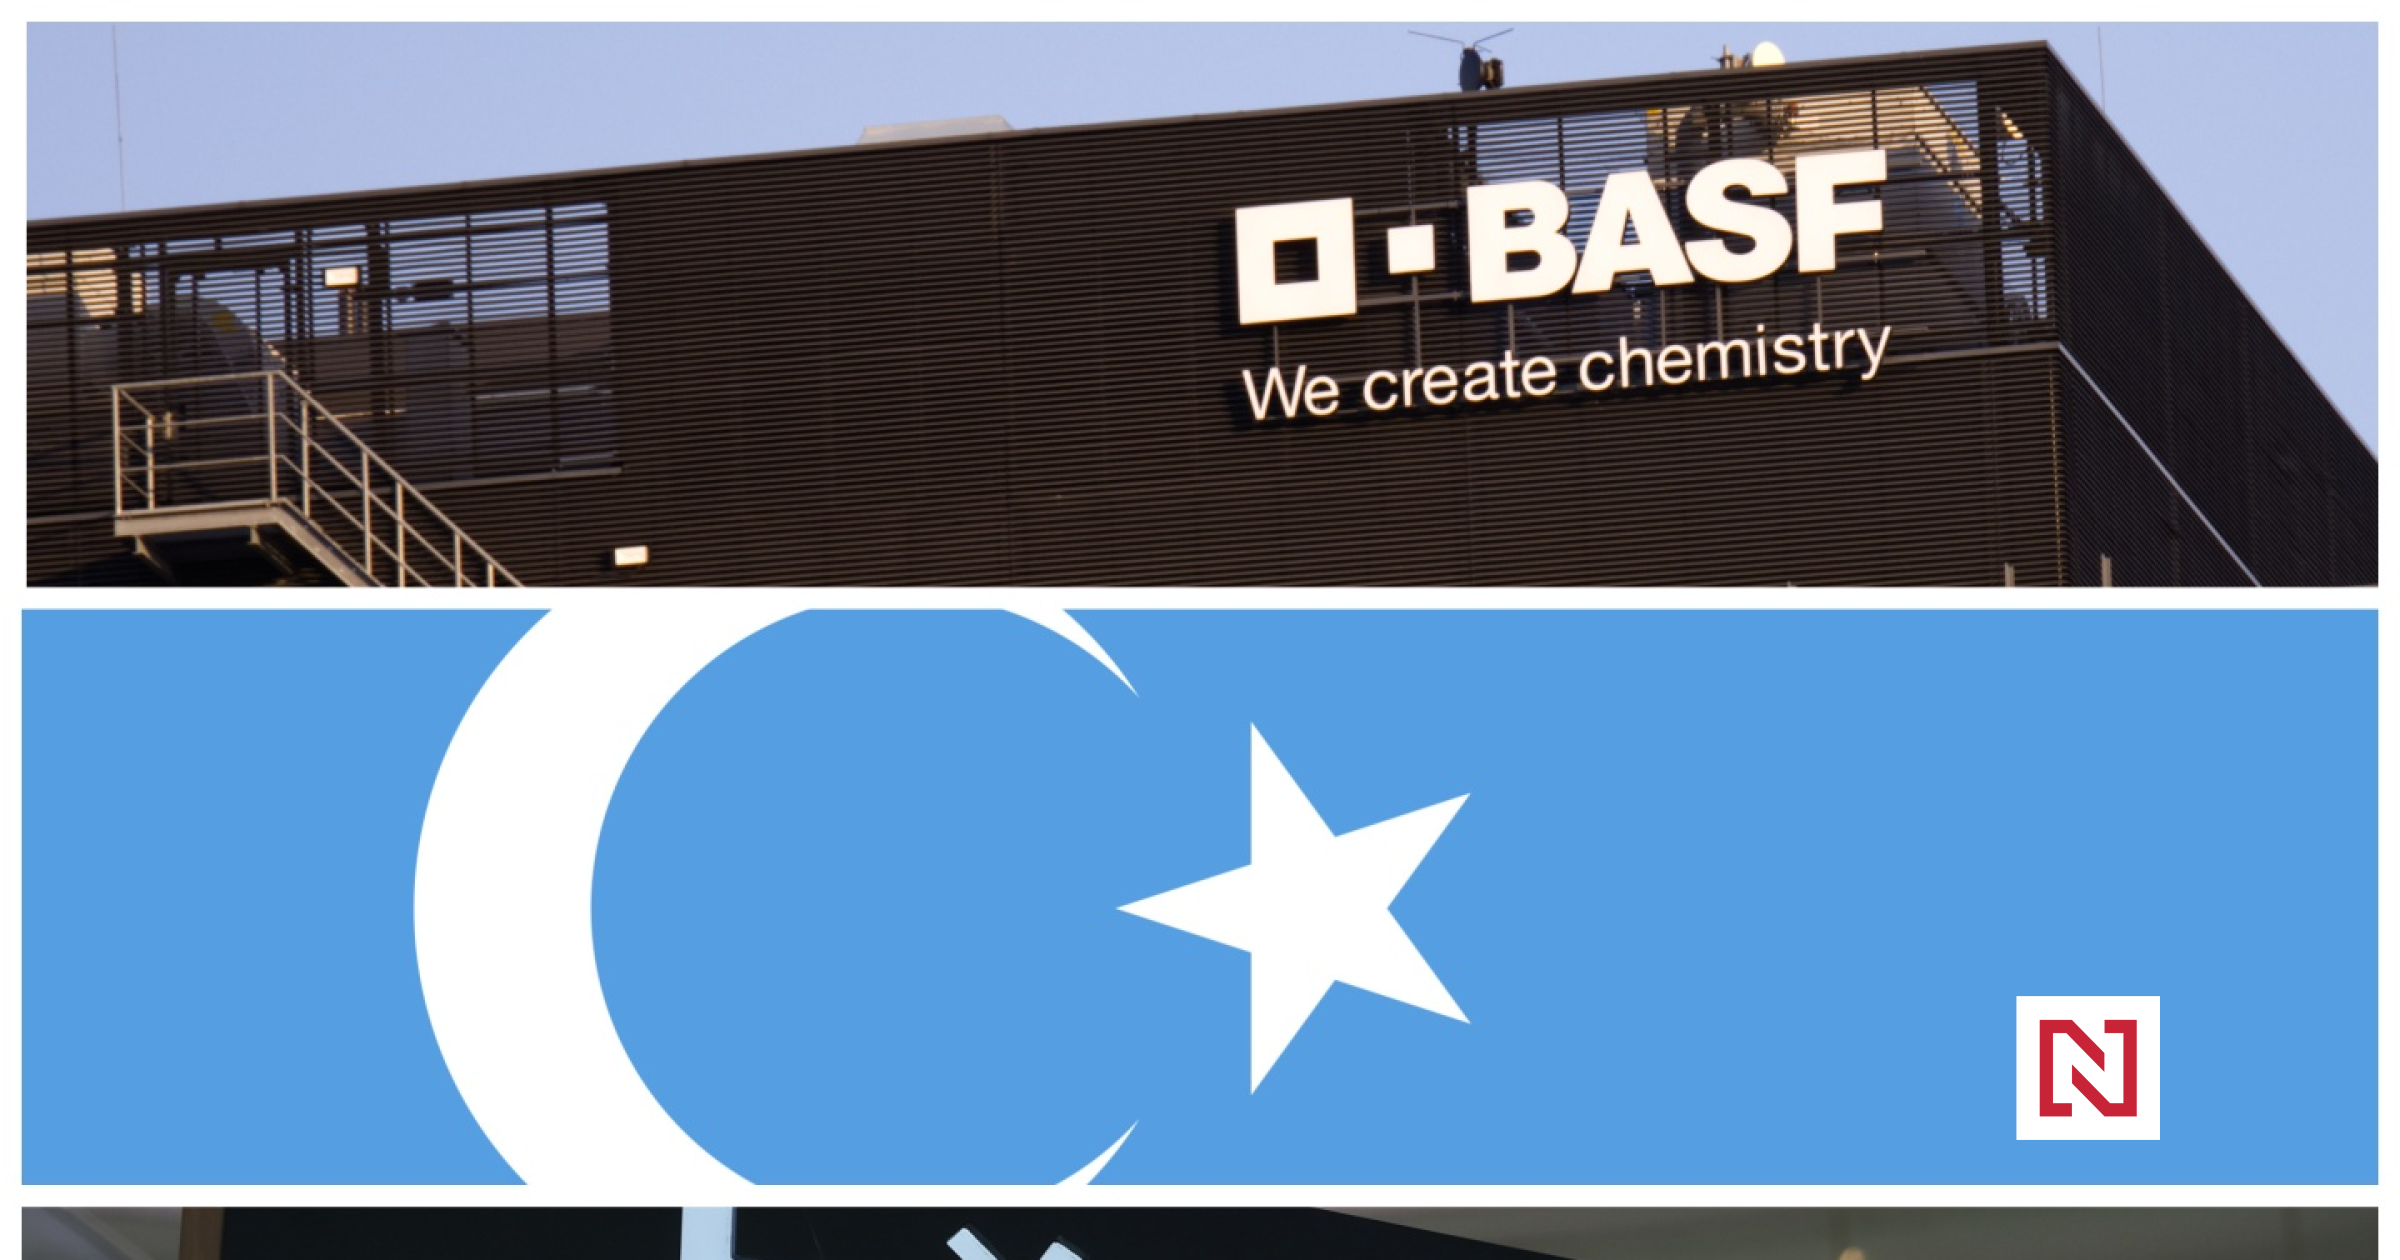 Der Chemieriese BASF zieht sich wegen Missbrauchs von Uiguren aus Xinjiang zurück